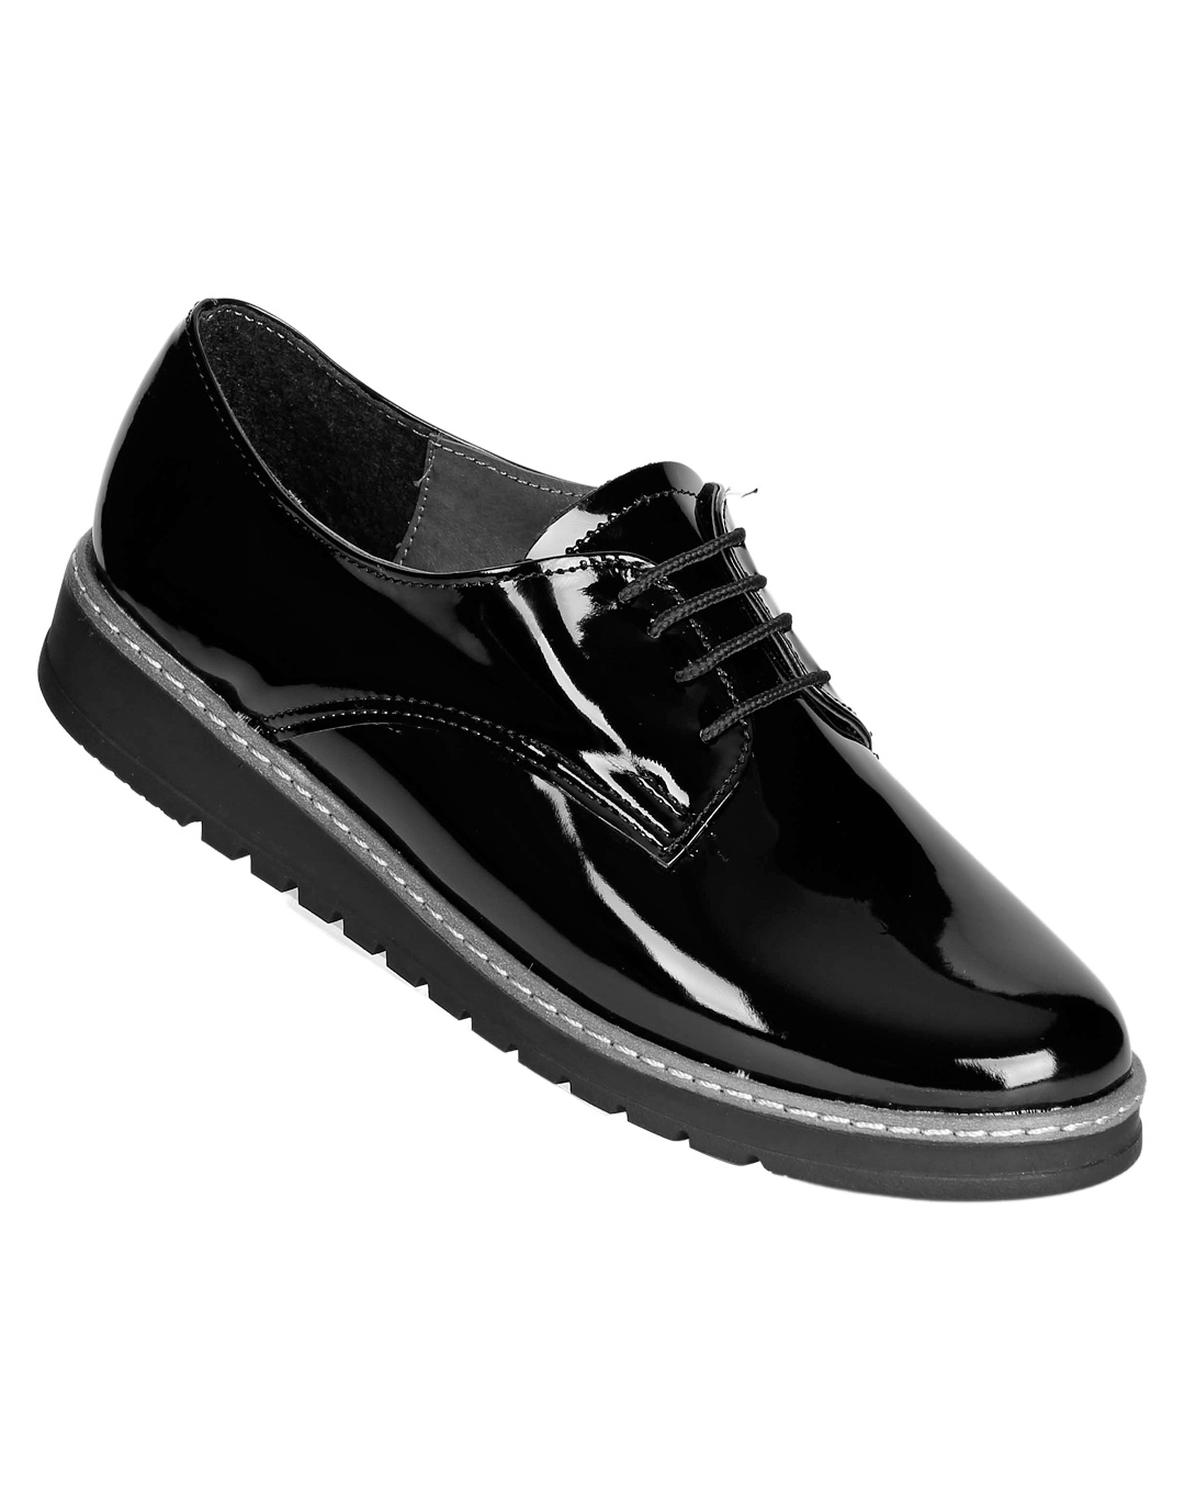 Zapato Casual Mujer Salvaje Tentación Negro 00302907 Tipo Charol